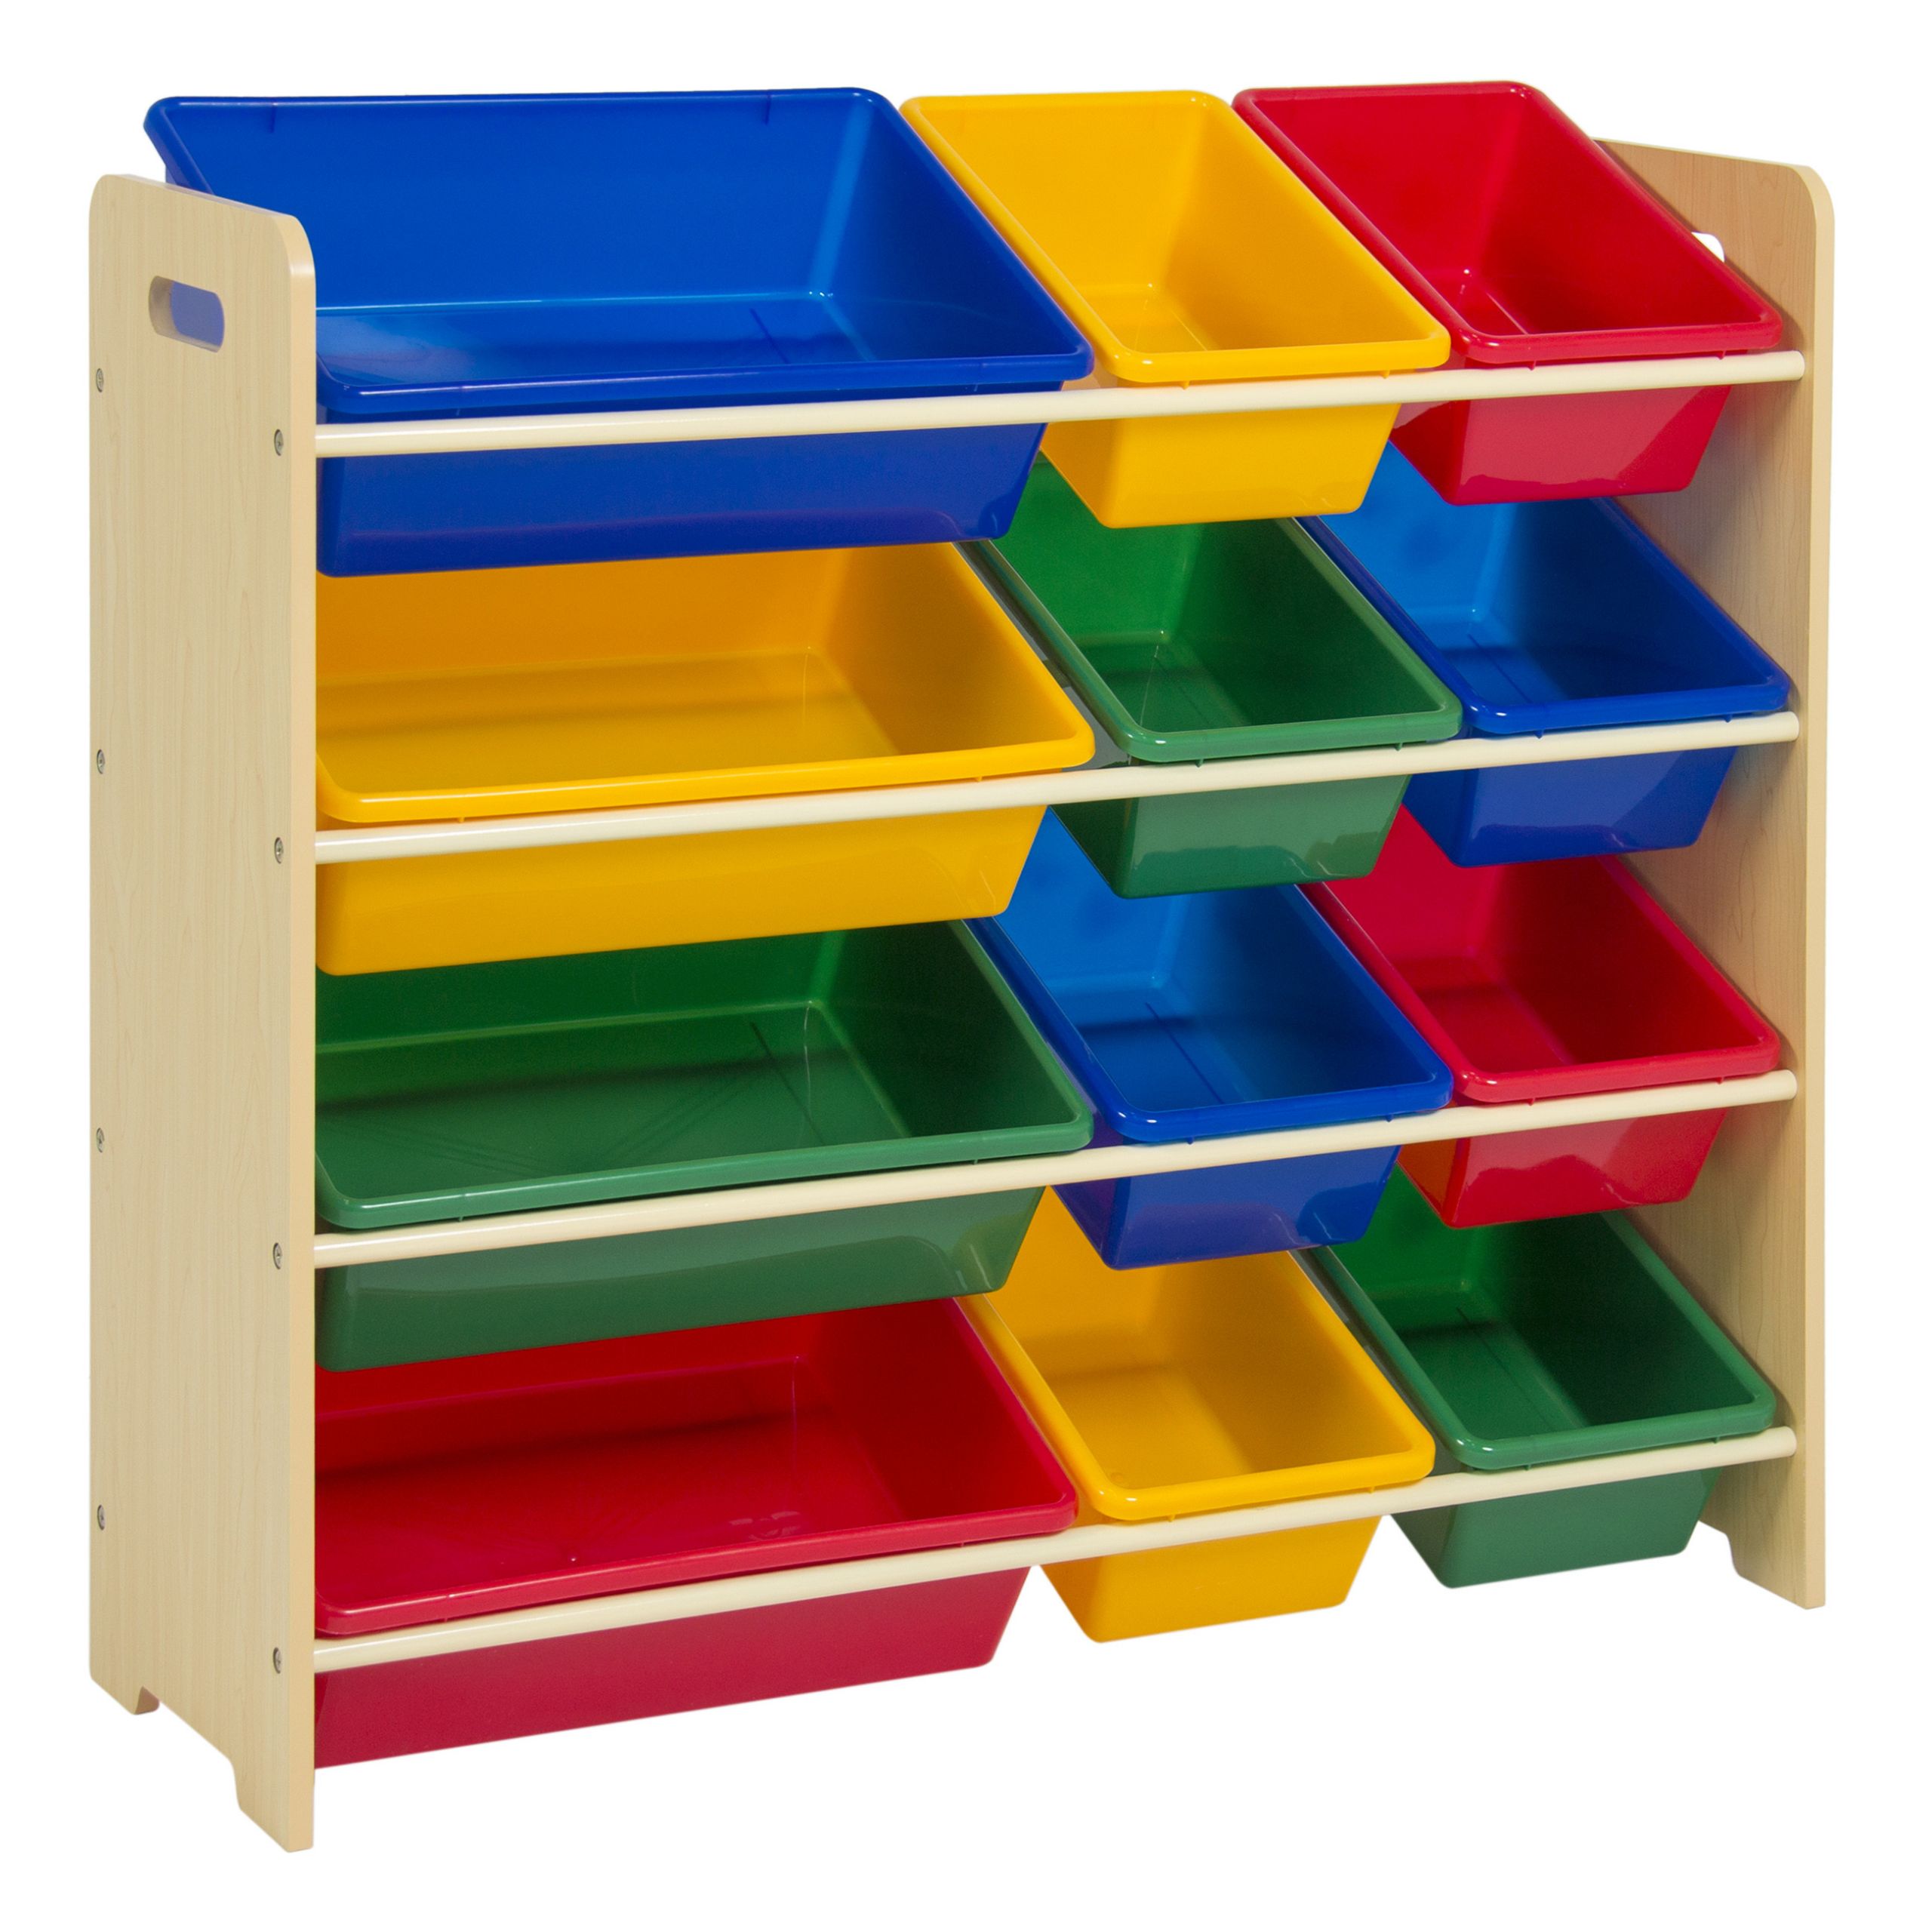 Children Storage Bins
 Toy Bin Organizer Kids Childrens Storage Box Playroom